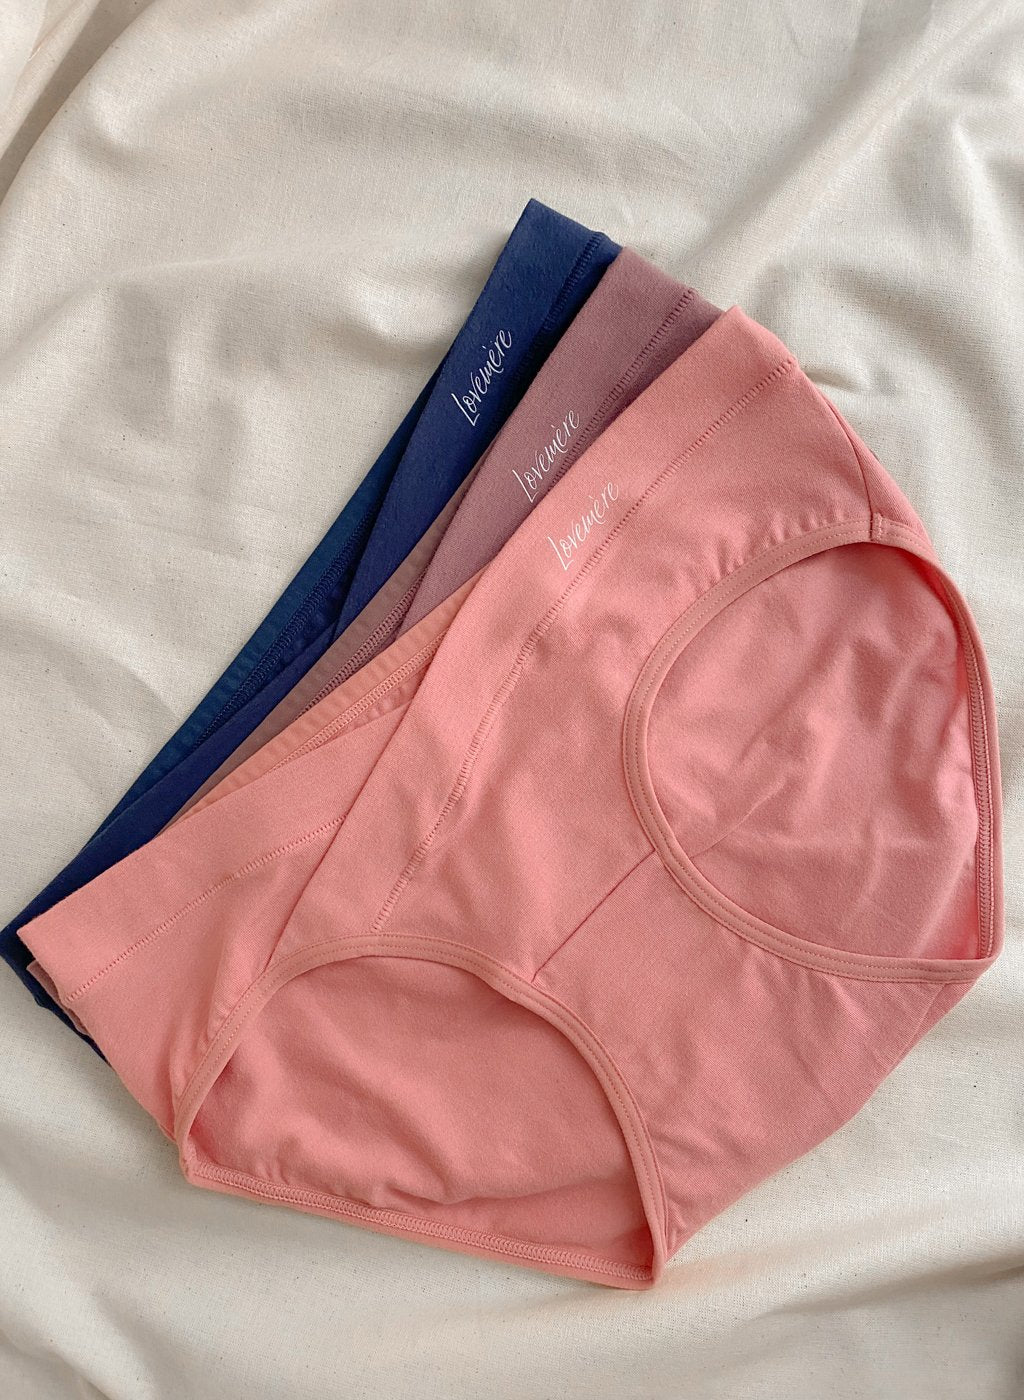 Lovemere maternity underwear